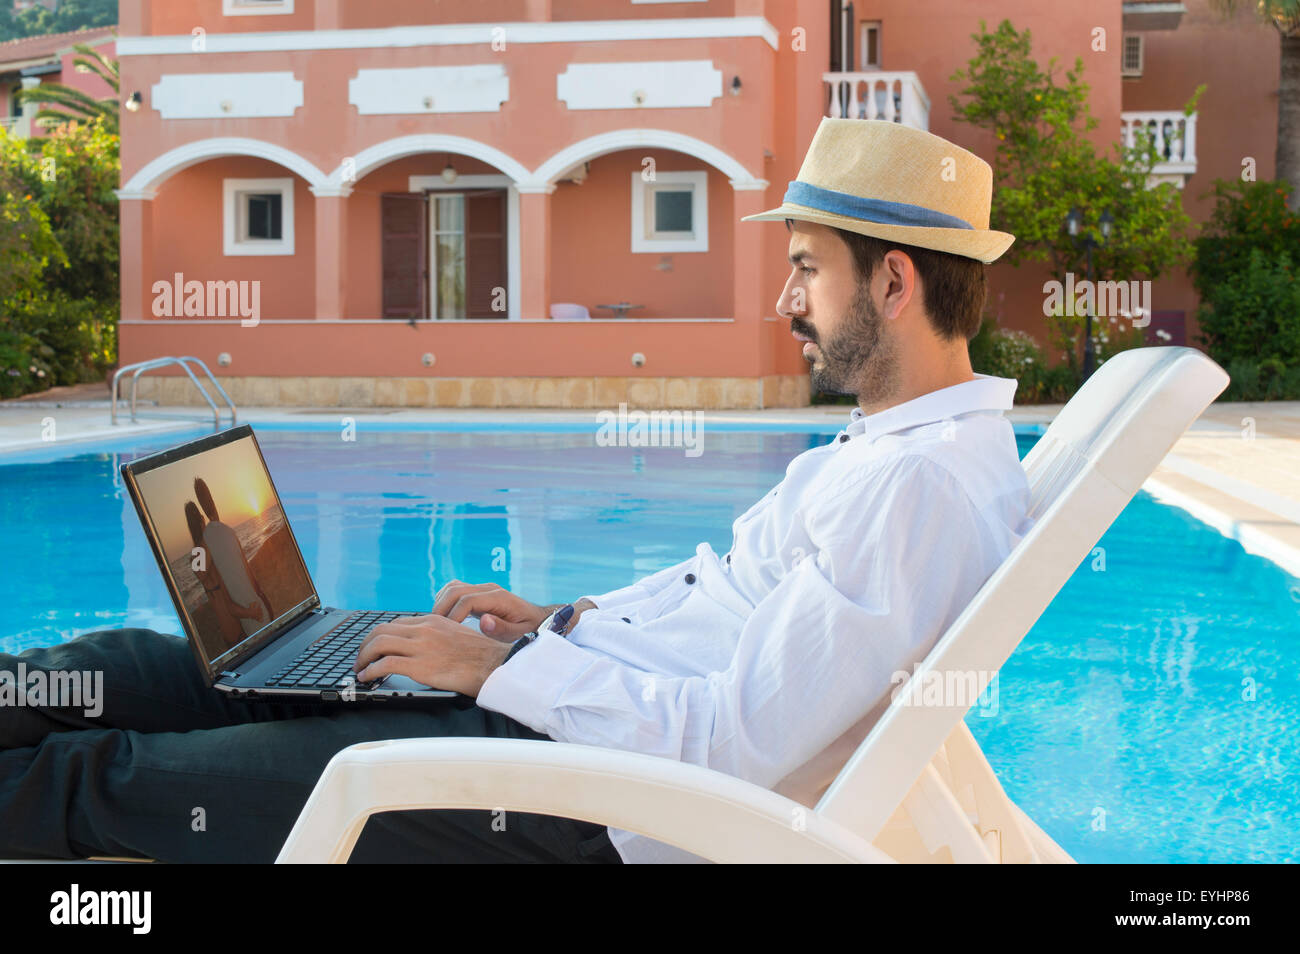 Jeune homme d'affaires sur pause tout en travaillant sur ses genoux haut de la piscine pendant les vacances wearing straw hat Banque D'Images